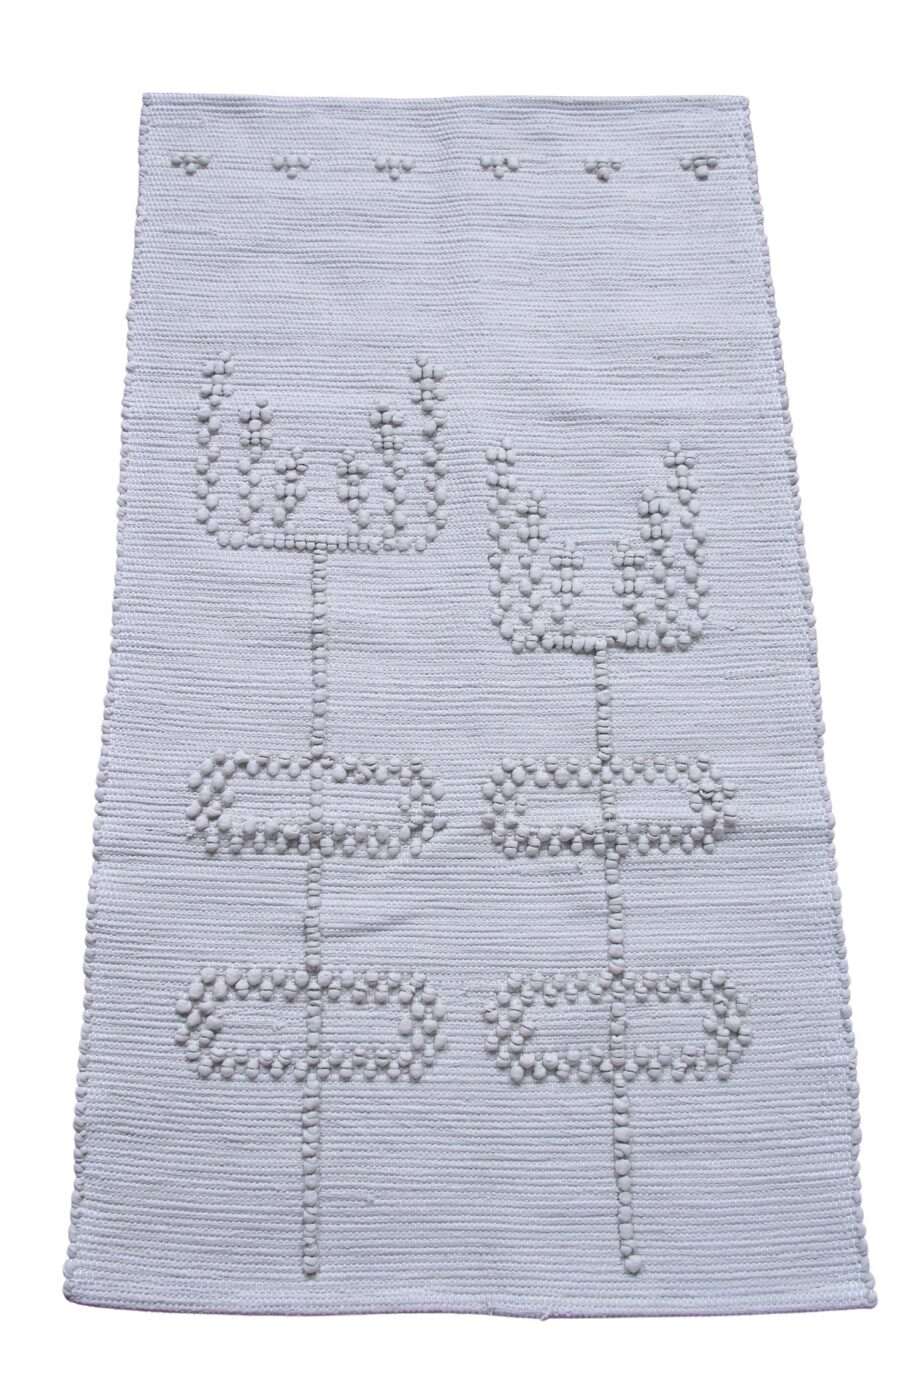 woven cotton floor mat summerflowers linen smal